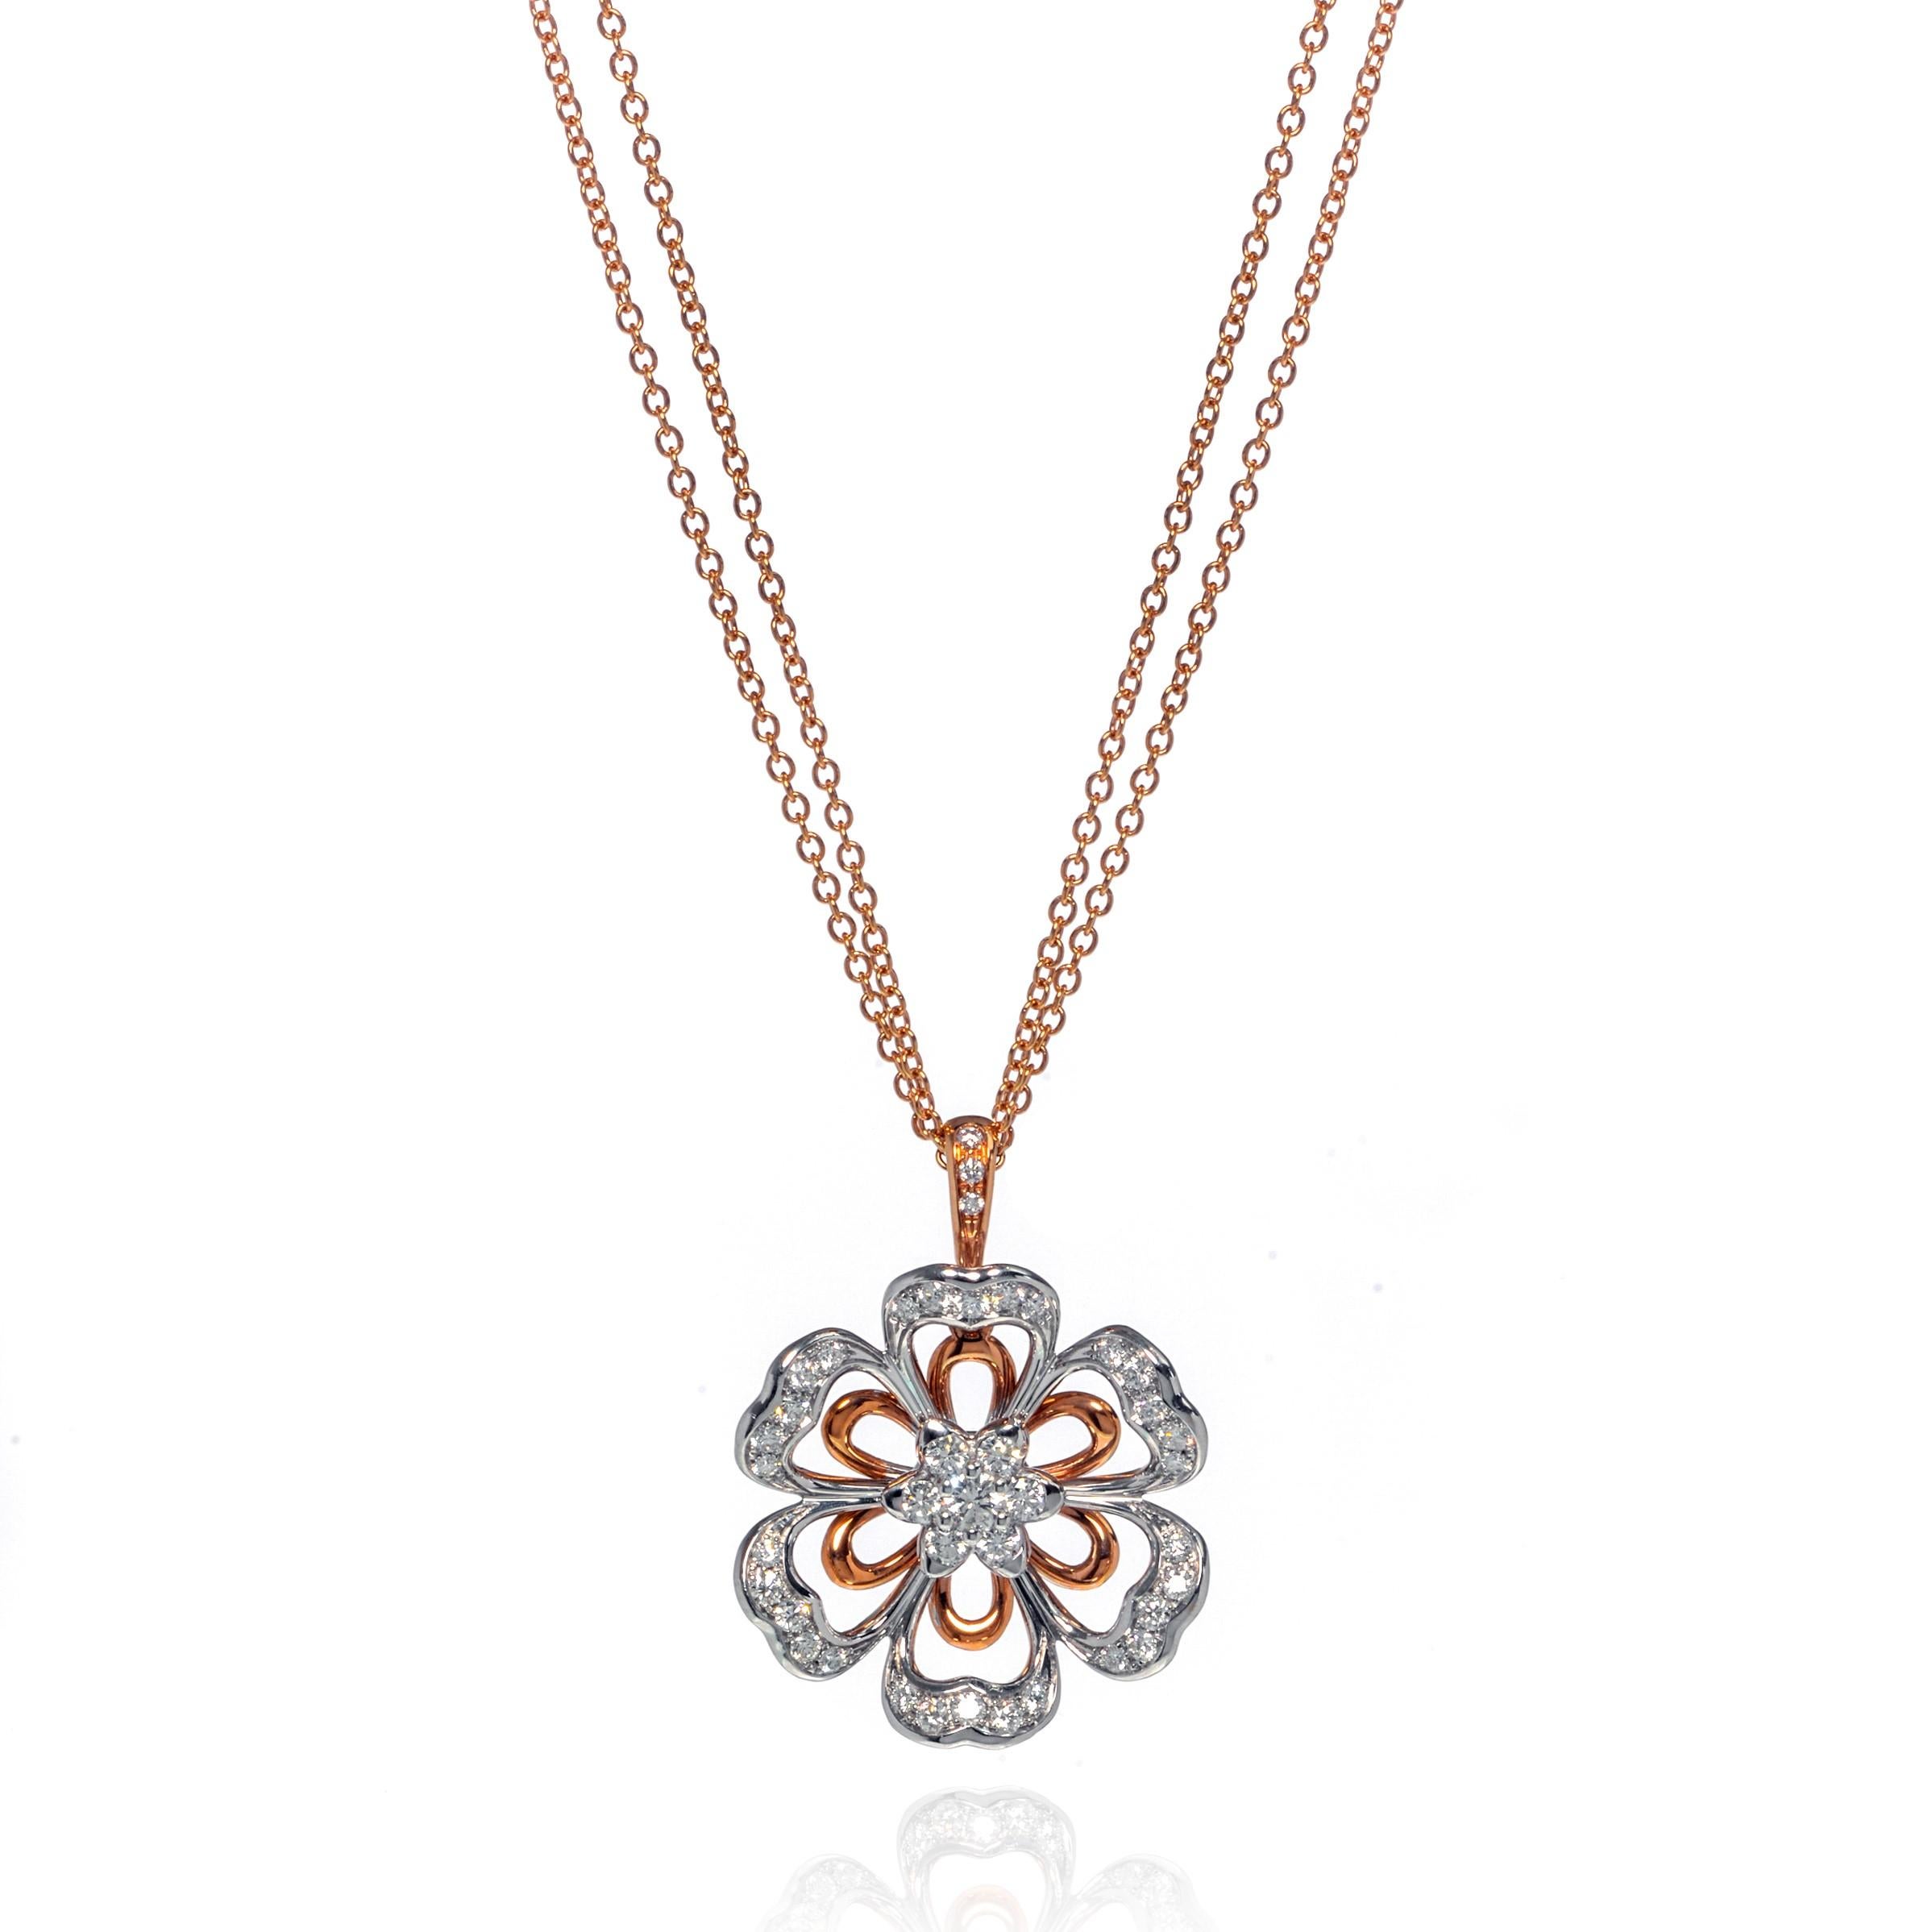 Ce magnifique collier pendentif Luca Carati en or rose et blanc 18 carats est orné d'une magnifique série de diamants de 1,11cttw en forme de fleur. Une monture florale en or blanc 18k superposée à une monture florale aérienne en or rose avec une